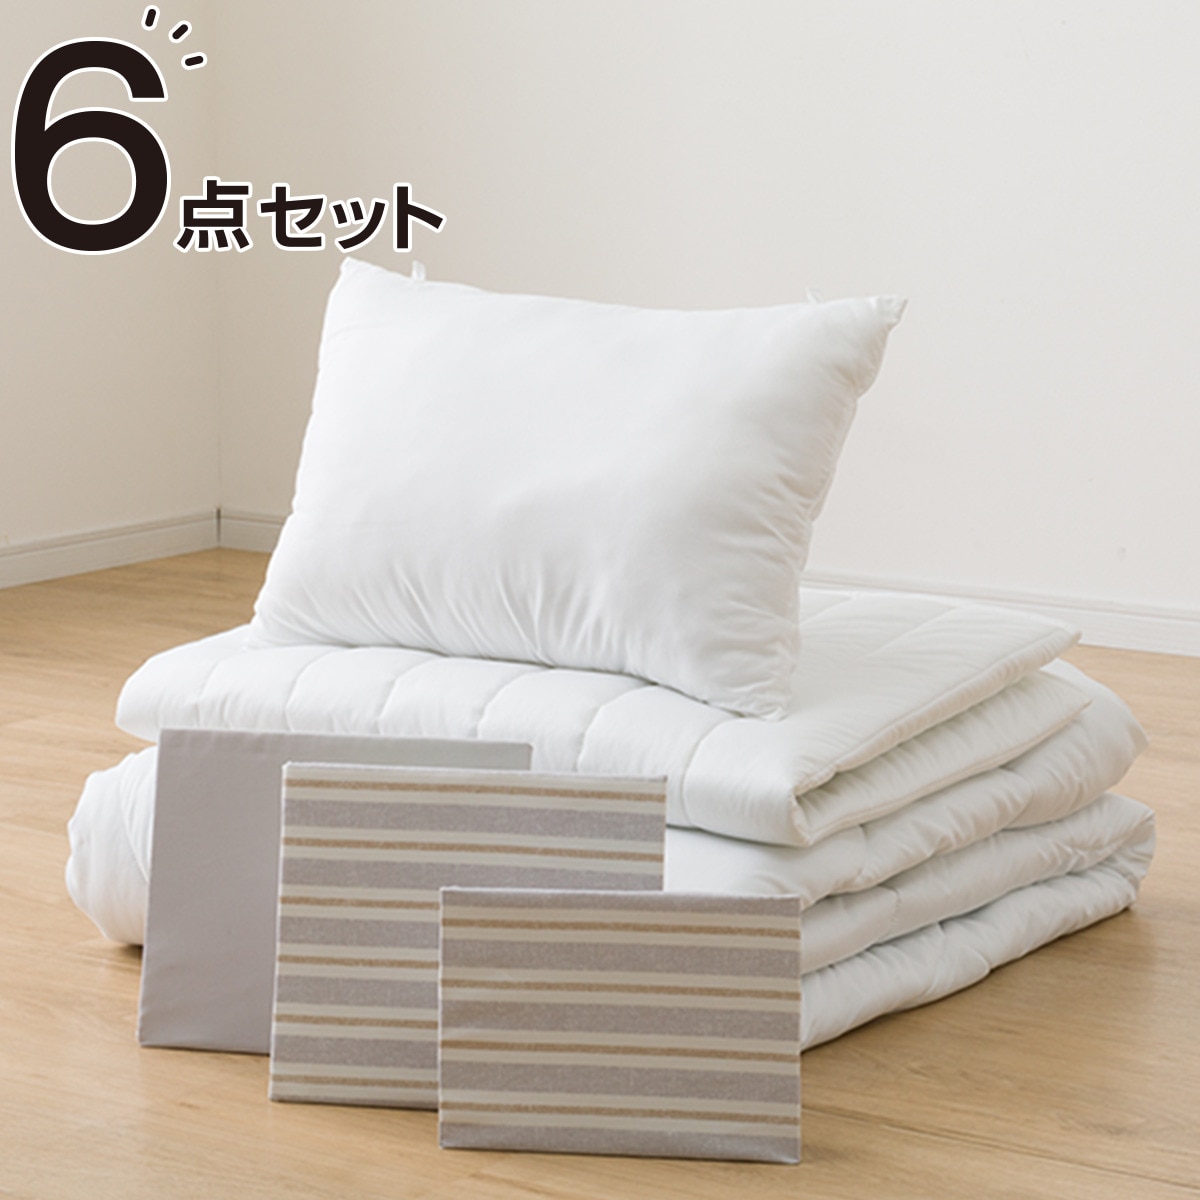 すぐに使えるベッド用寝具6点セット シングル( BD/GY S2402 S 